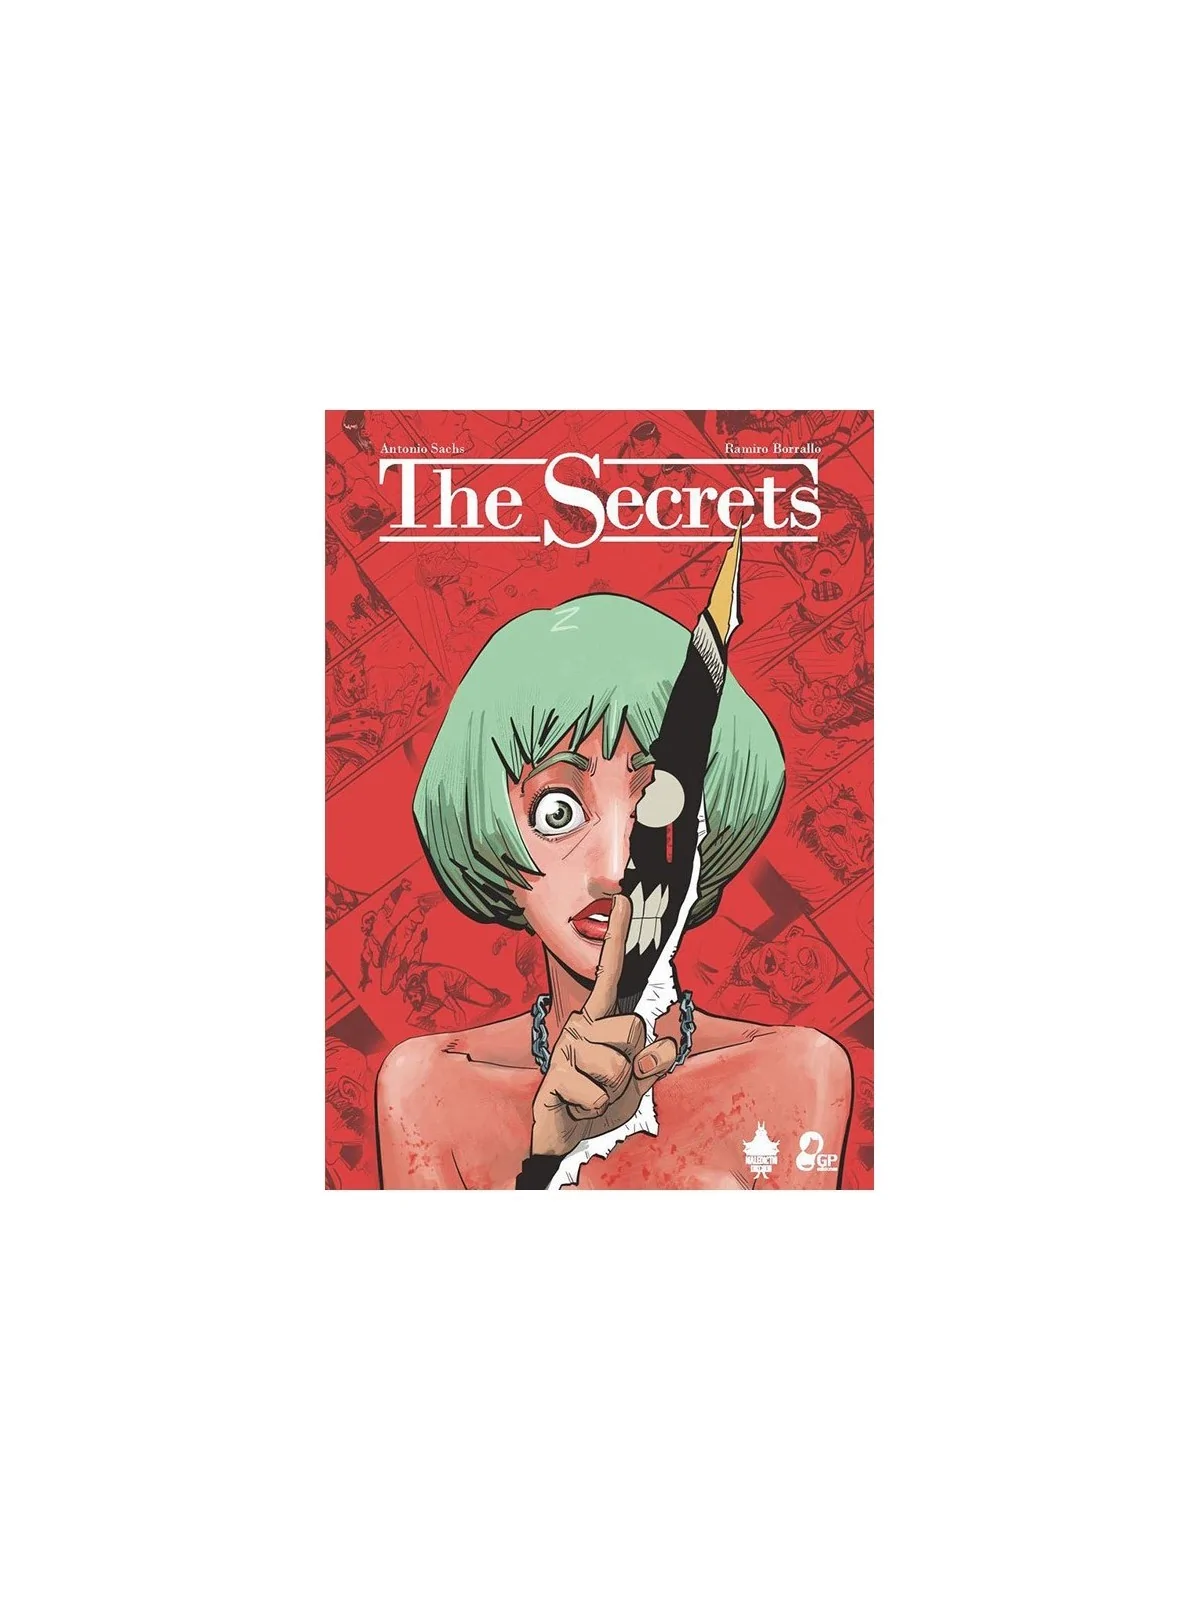 Comprar The Secrets barato al mejor precio 15,20 € de Gp Ediciones